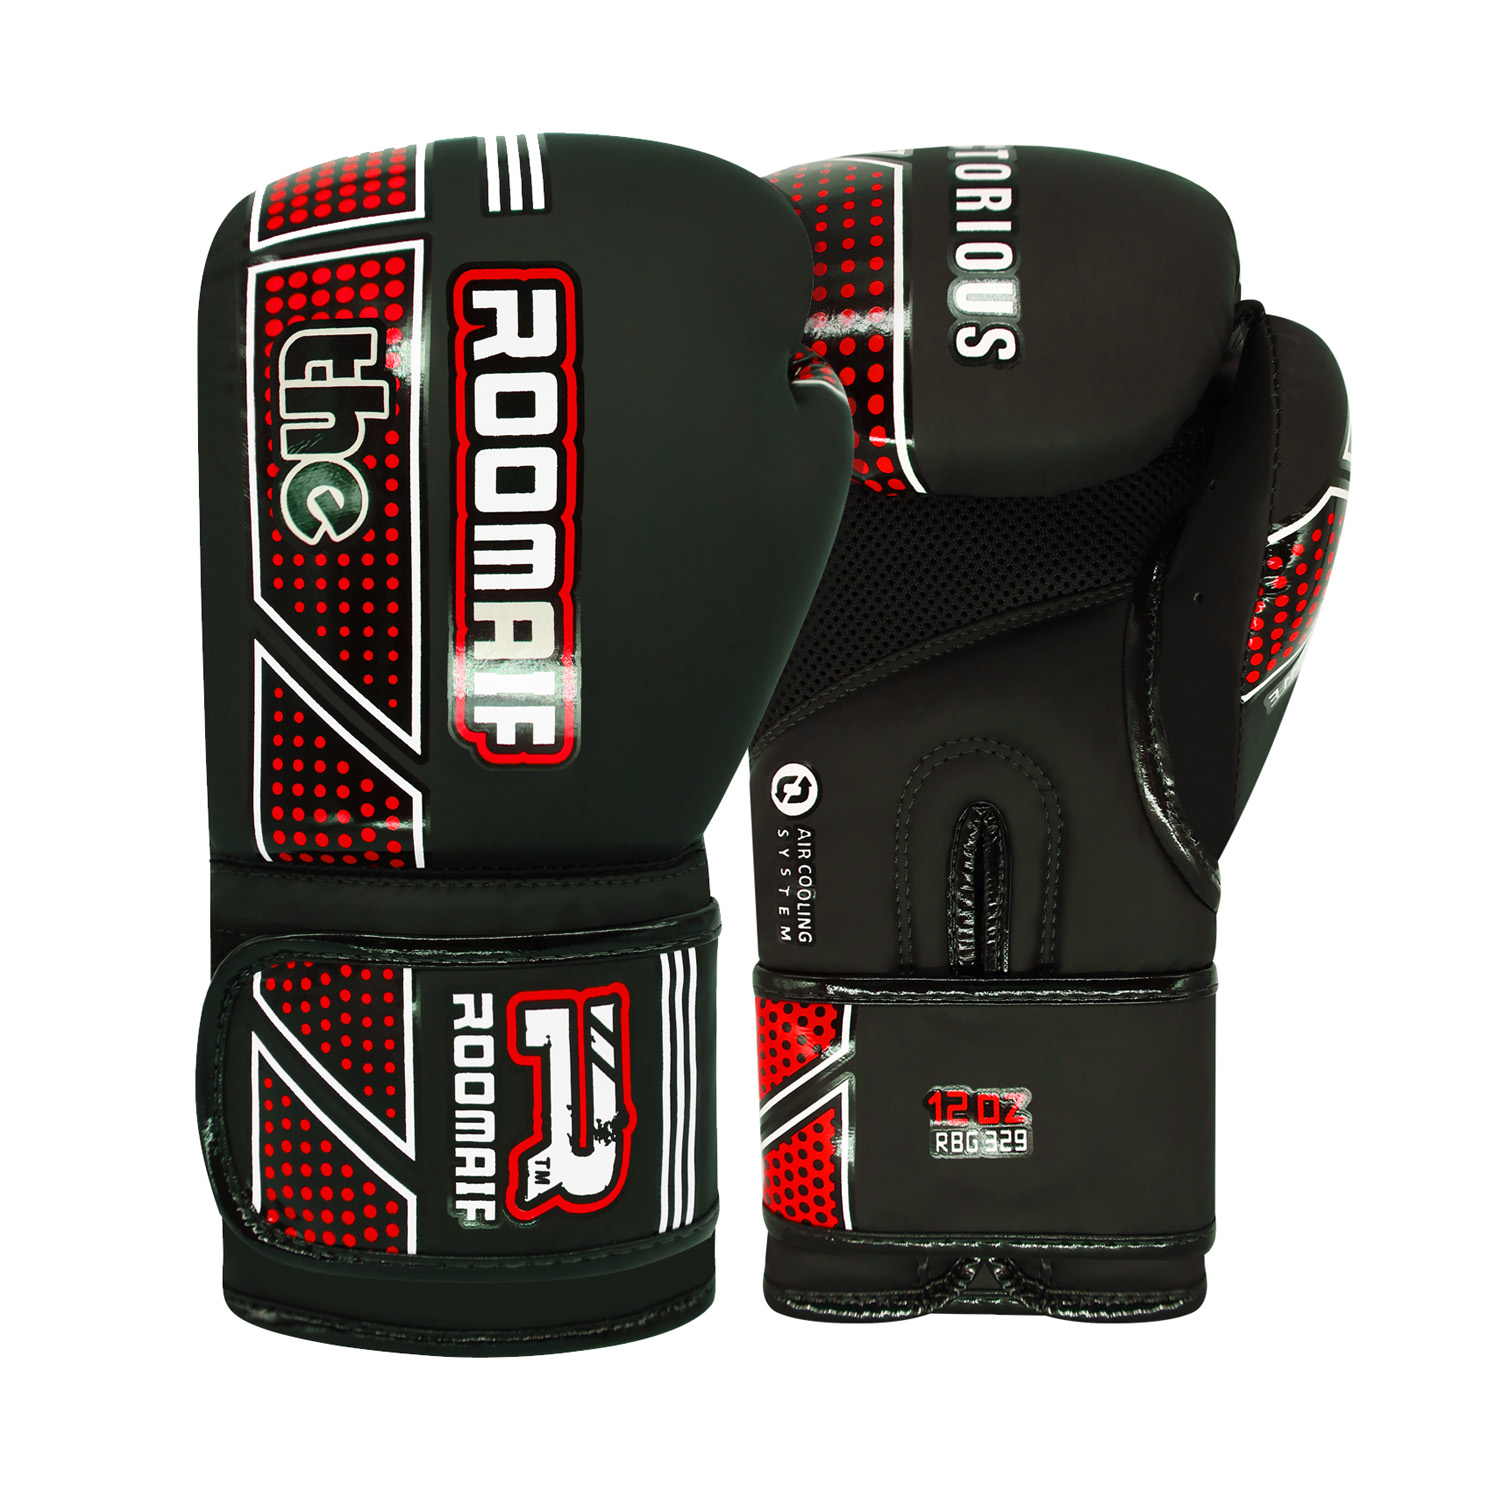 Боксерские перчатки Roomaif Rbg-329 Dx Black (08 oz)